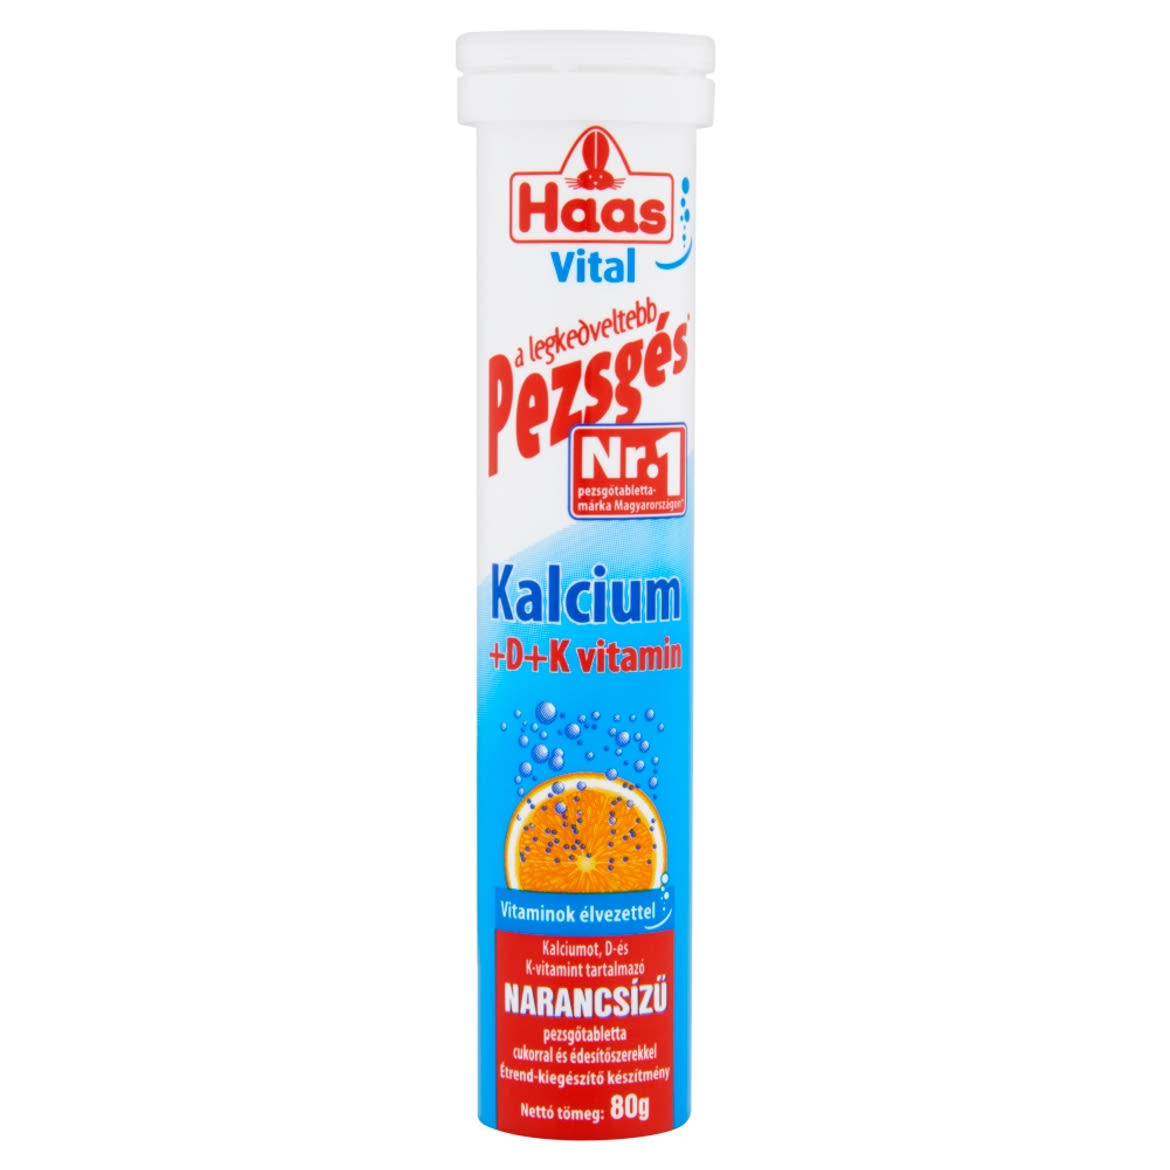 Haas Vital Kalcium + D + K- vitamin narancsízű étrend-kiegészítő pezsgőtabletta